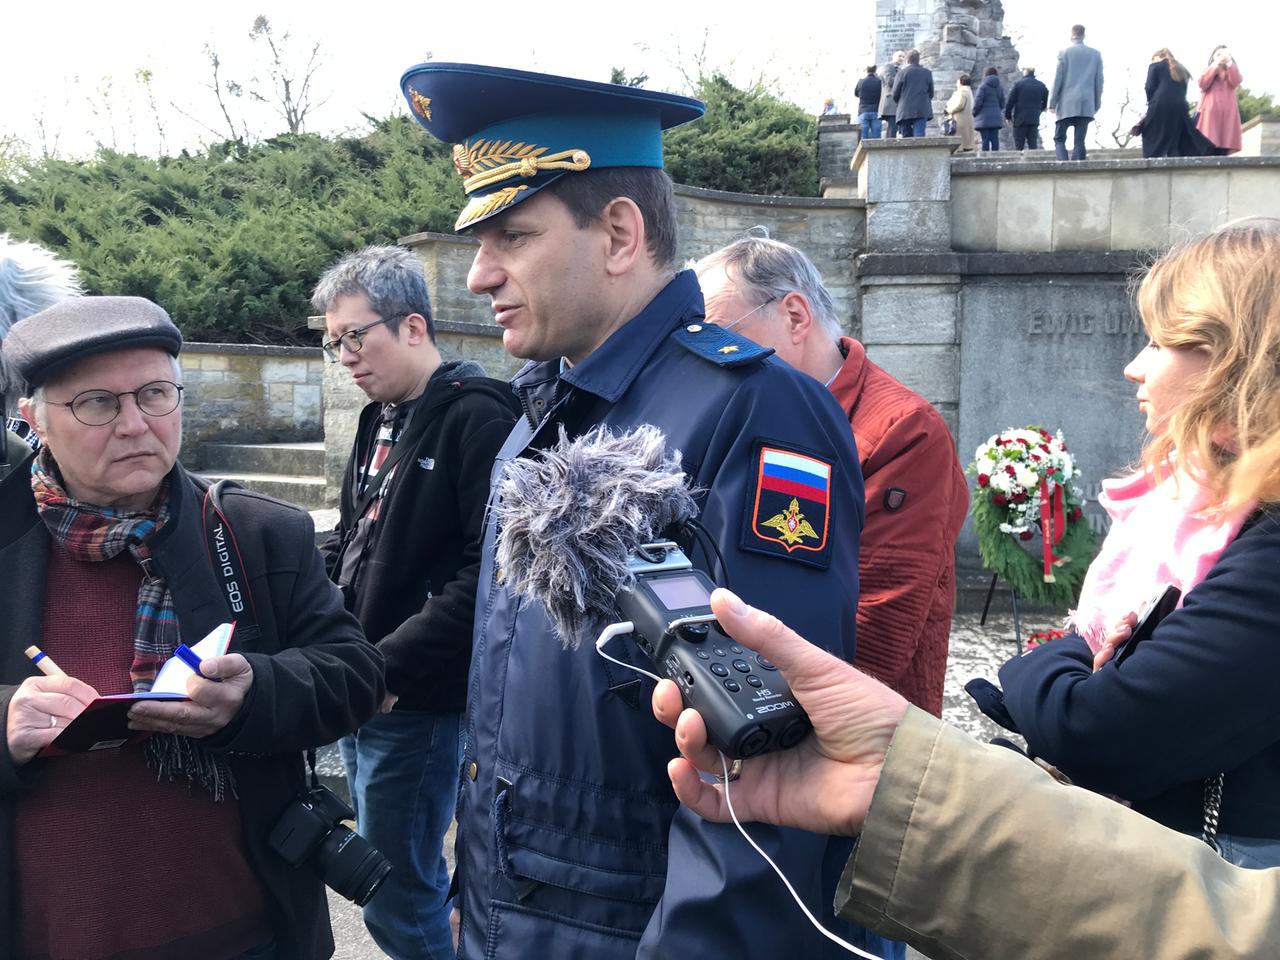 Ein russischer Militärattaché in Uniform an einem Gedenkort umringt von Journalisten